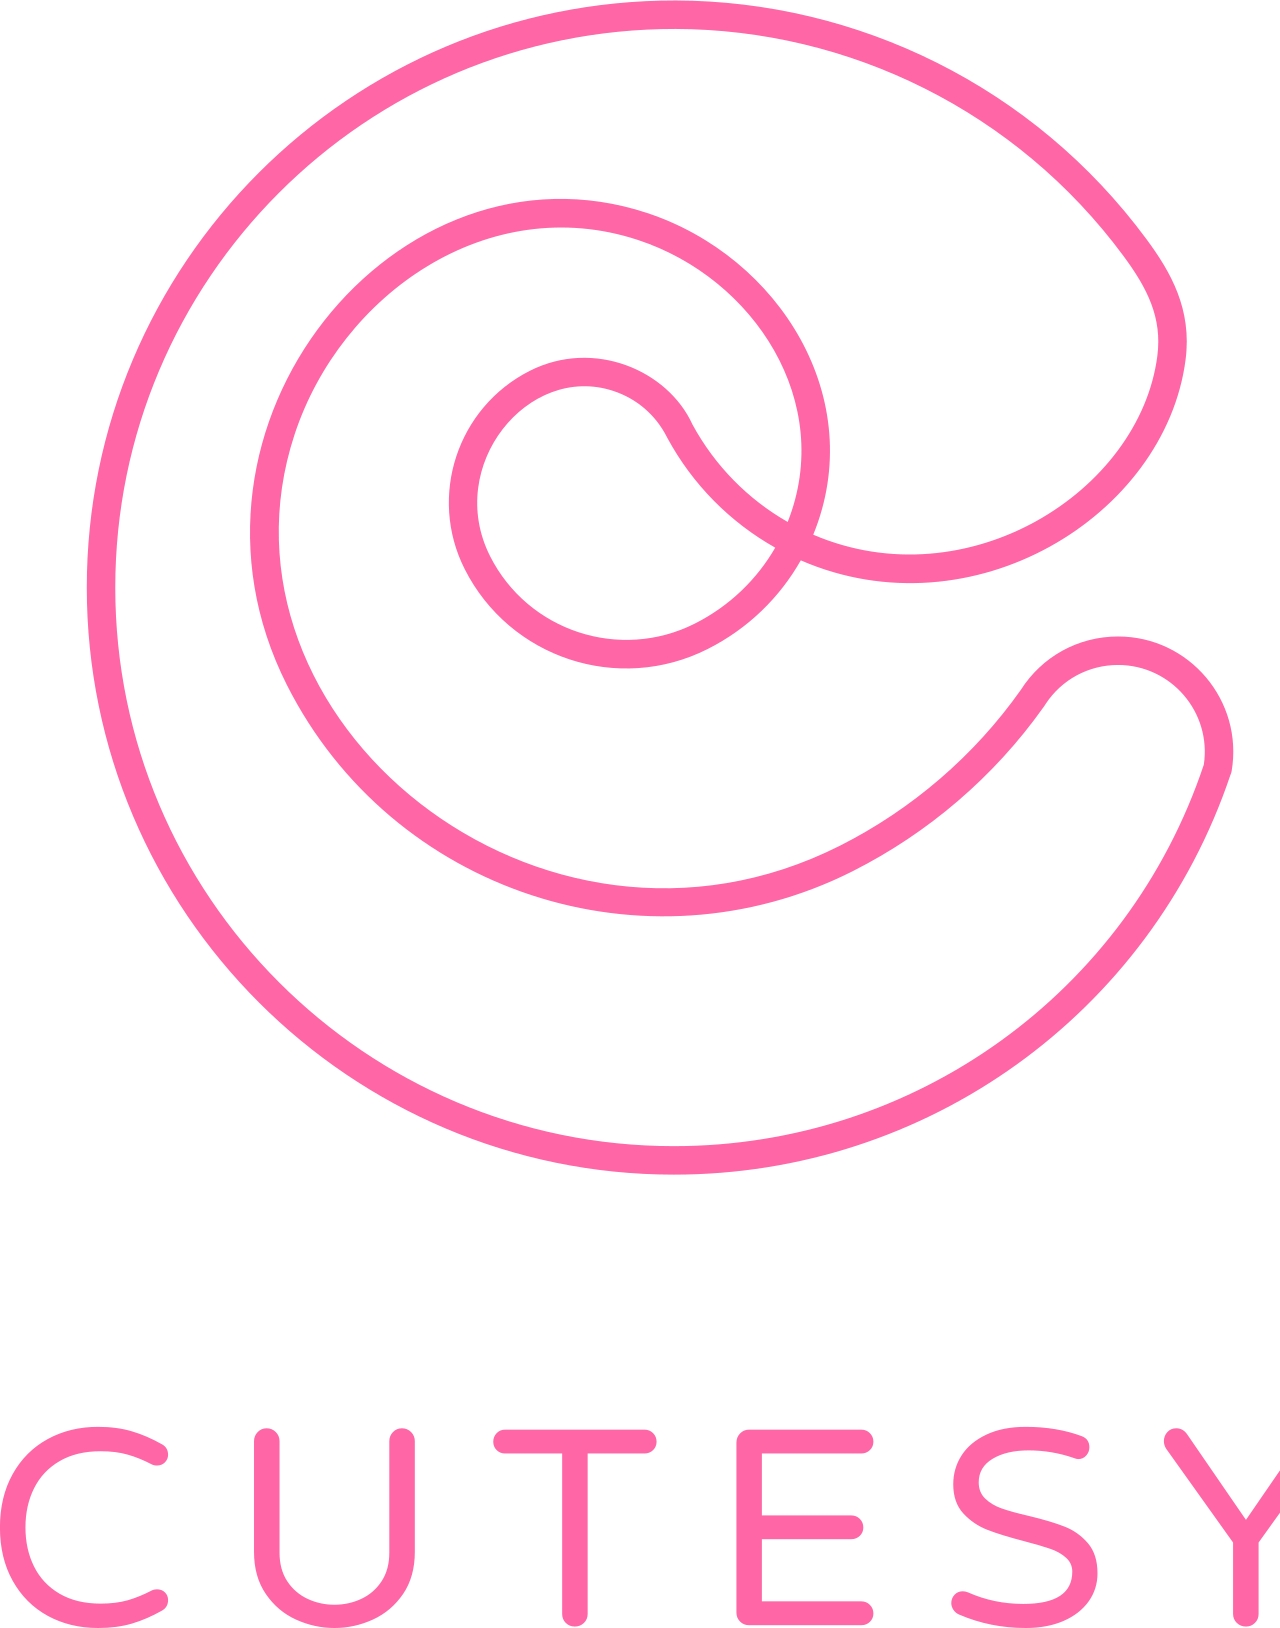 Cutesy's logo